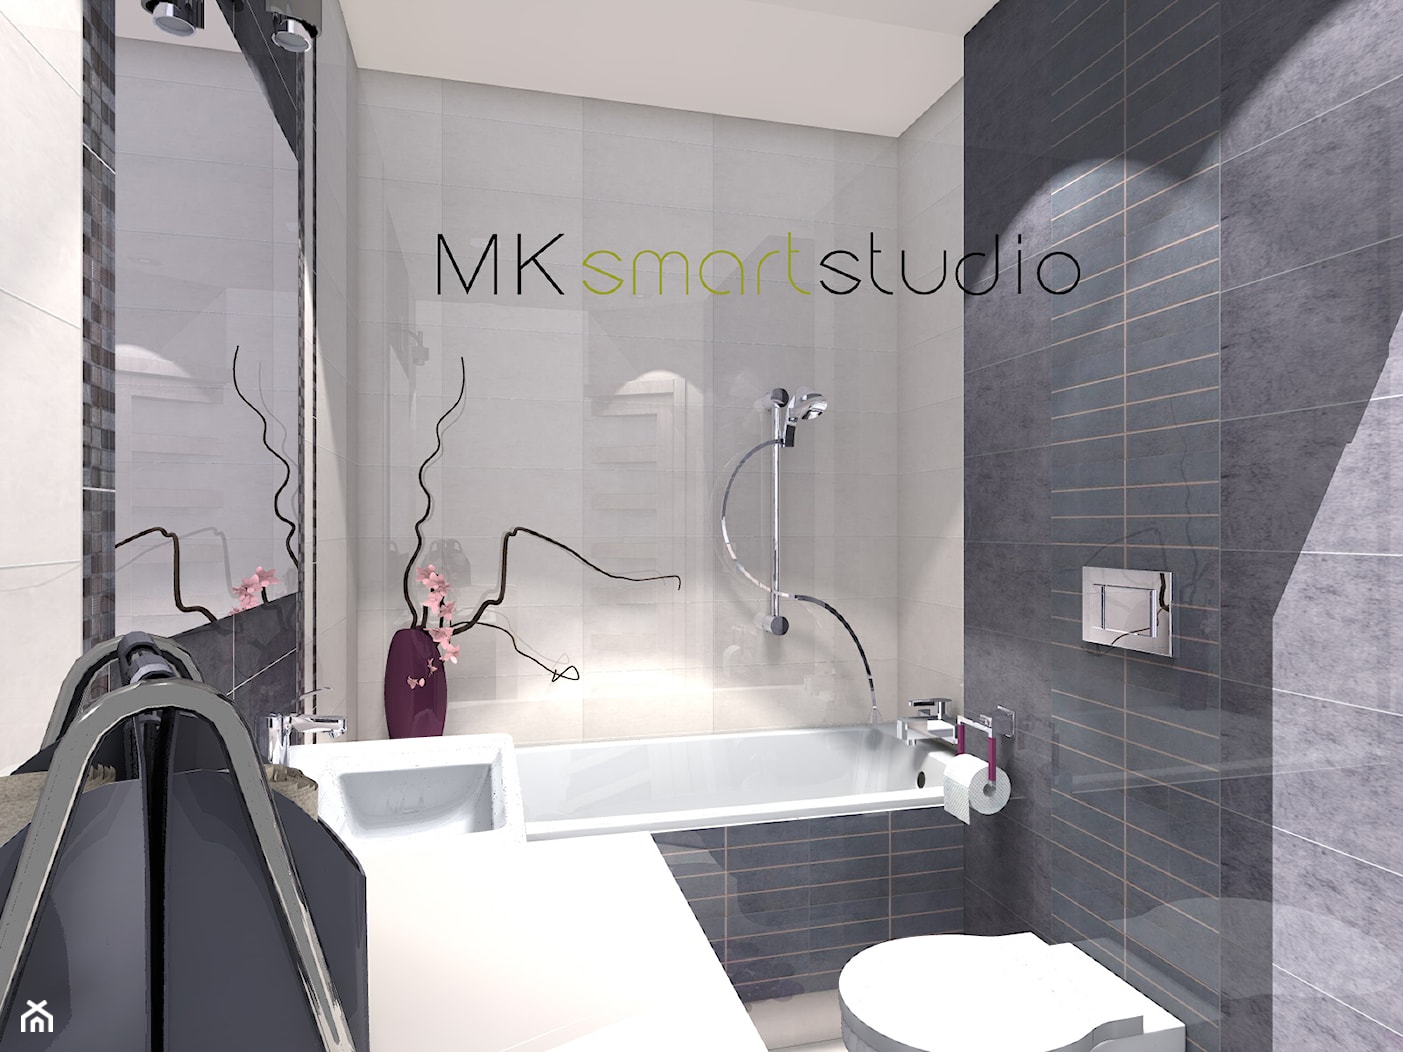 Od projektu do realizacji szarej nowoczesnej łazienki - Łazienka, styl nowoczesny - zdjęcie od MKsmartstudio - Homebook